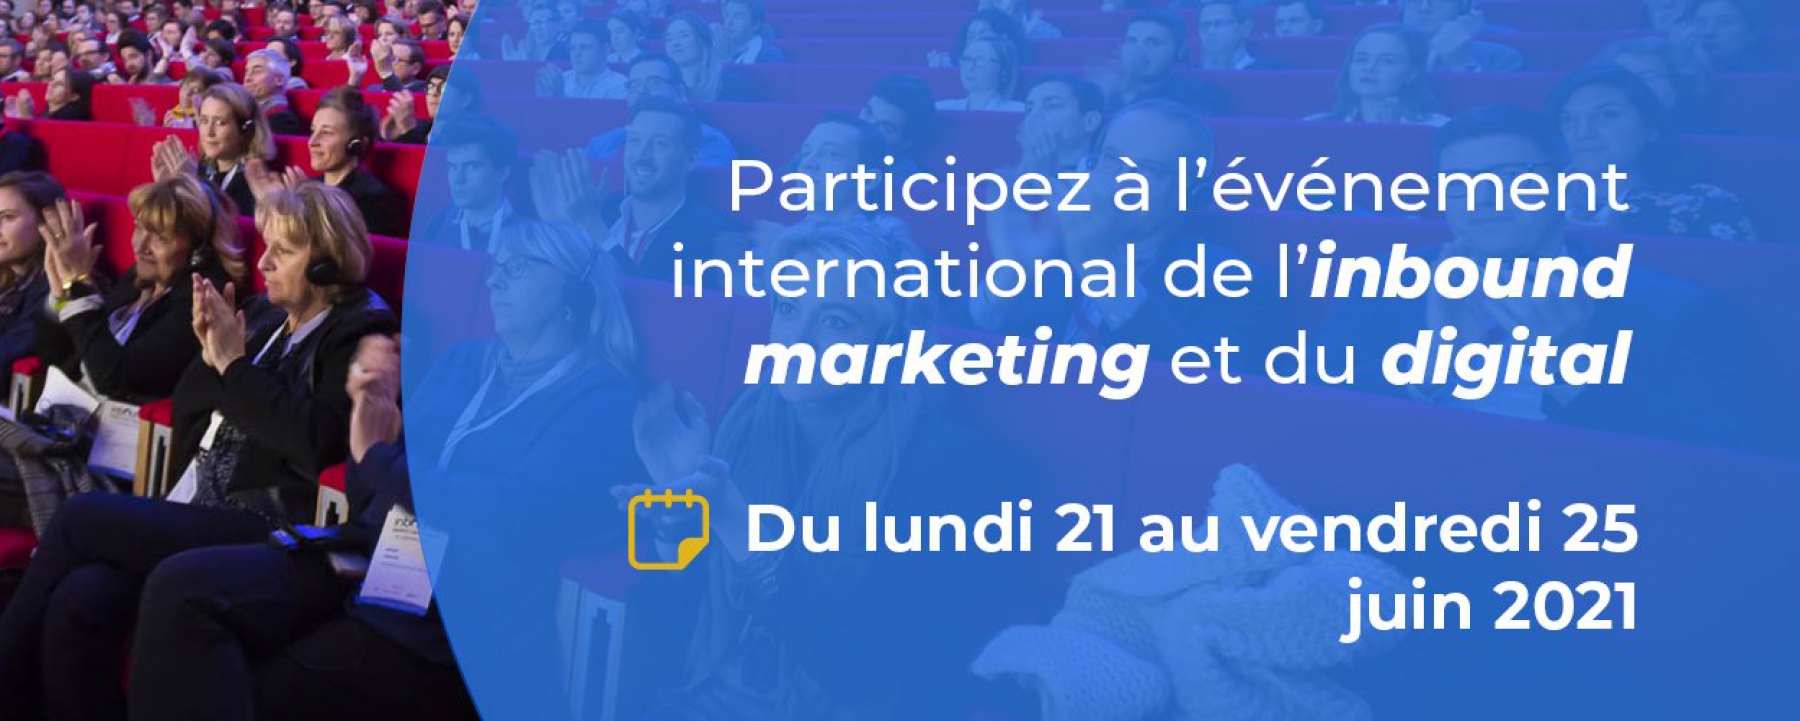 Inbound Marketing France 2021 du 21 au 25 juin par Winbound